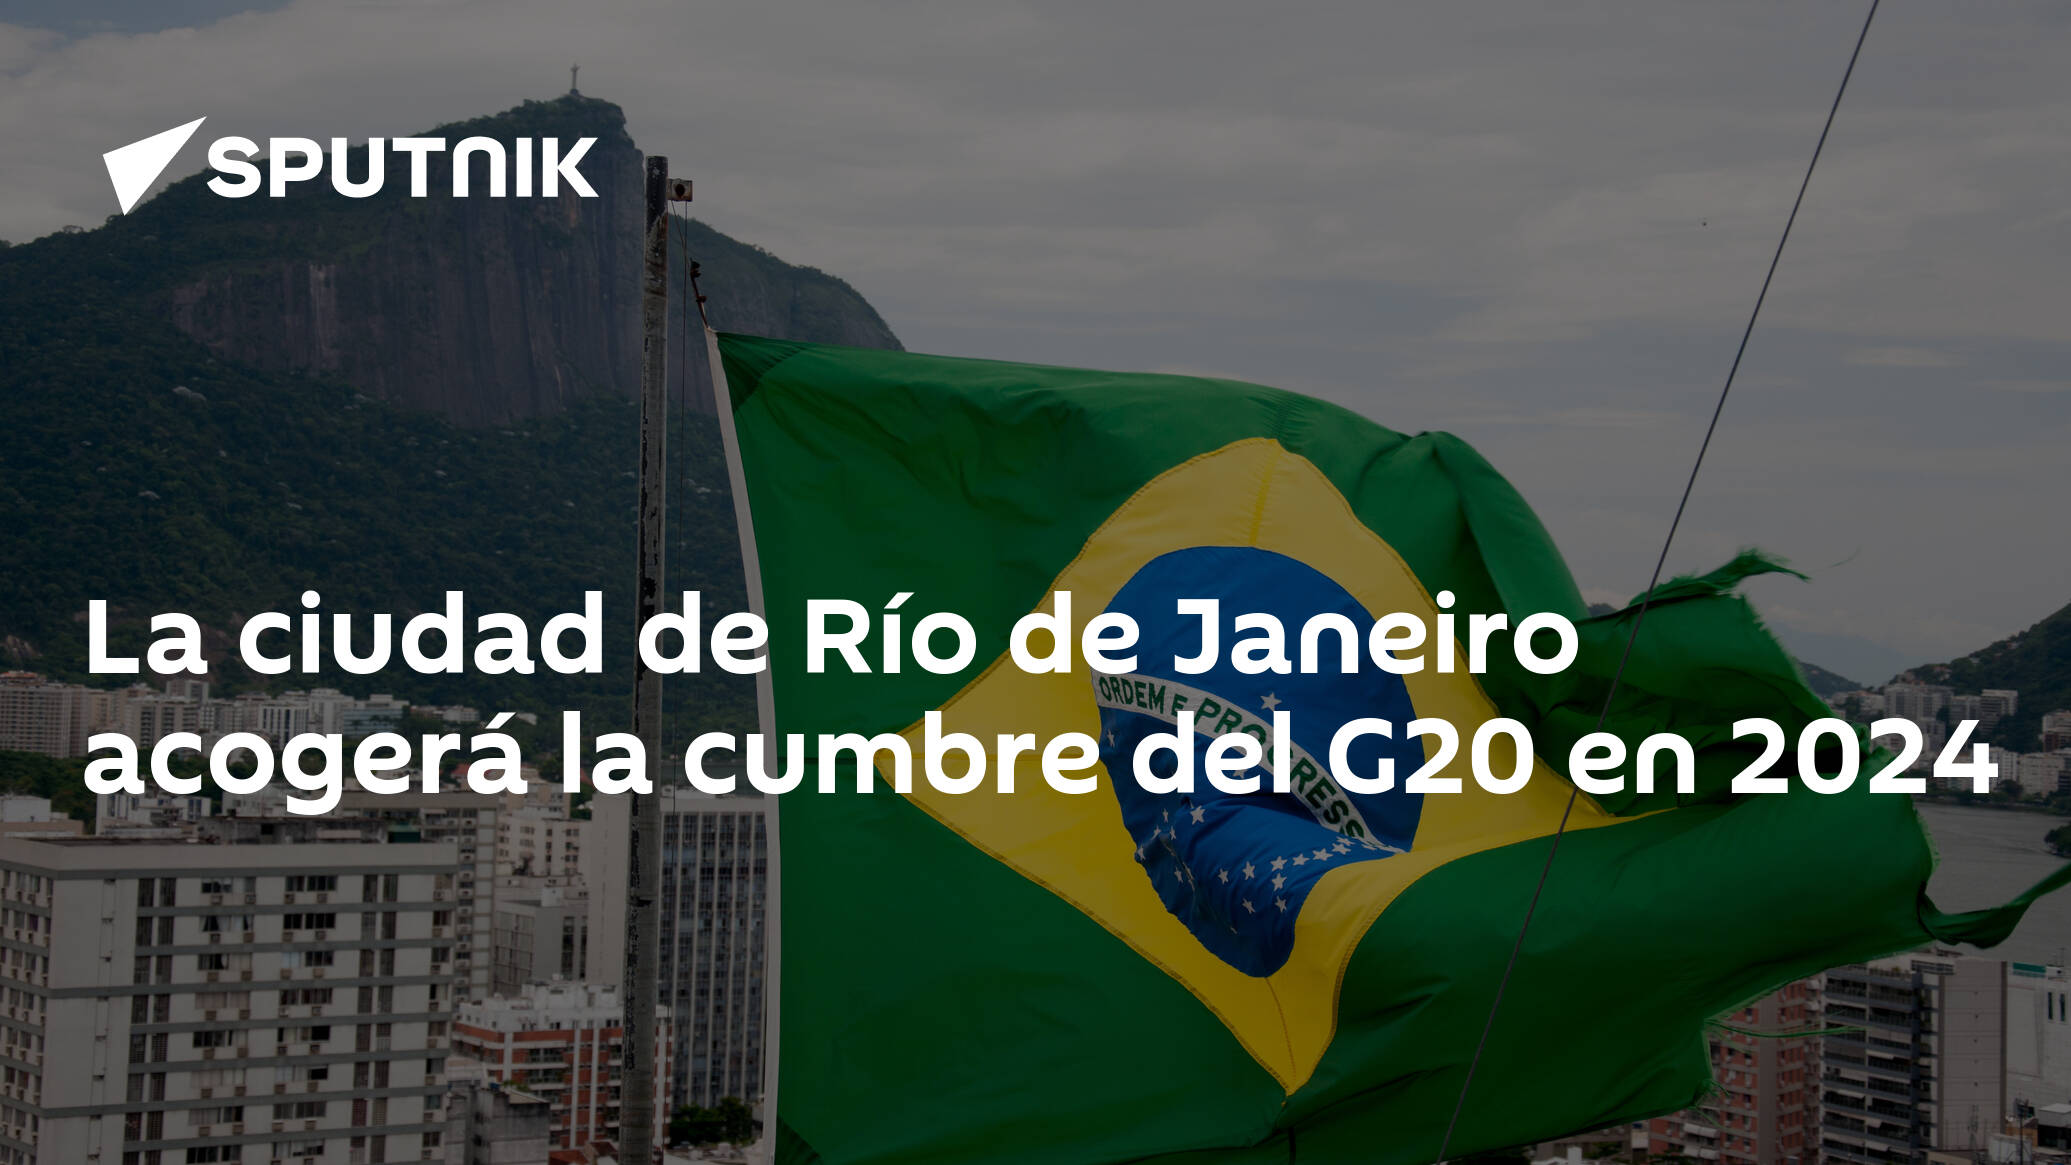 La ciudad de Río de Janeiro acogerá la cumbre del G20 en 2024 09.05.